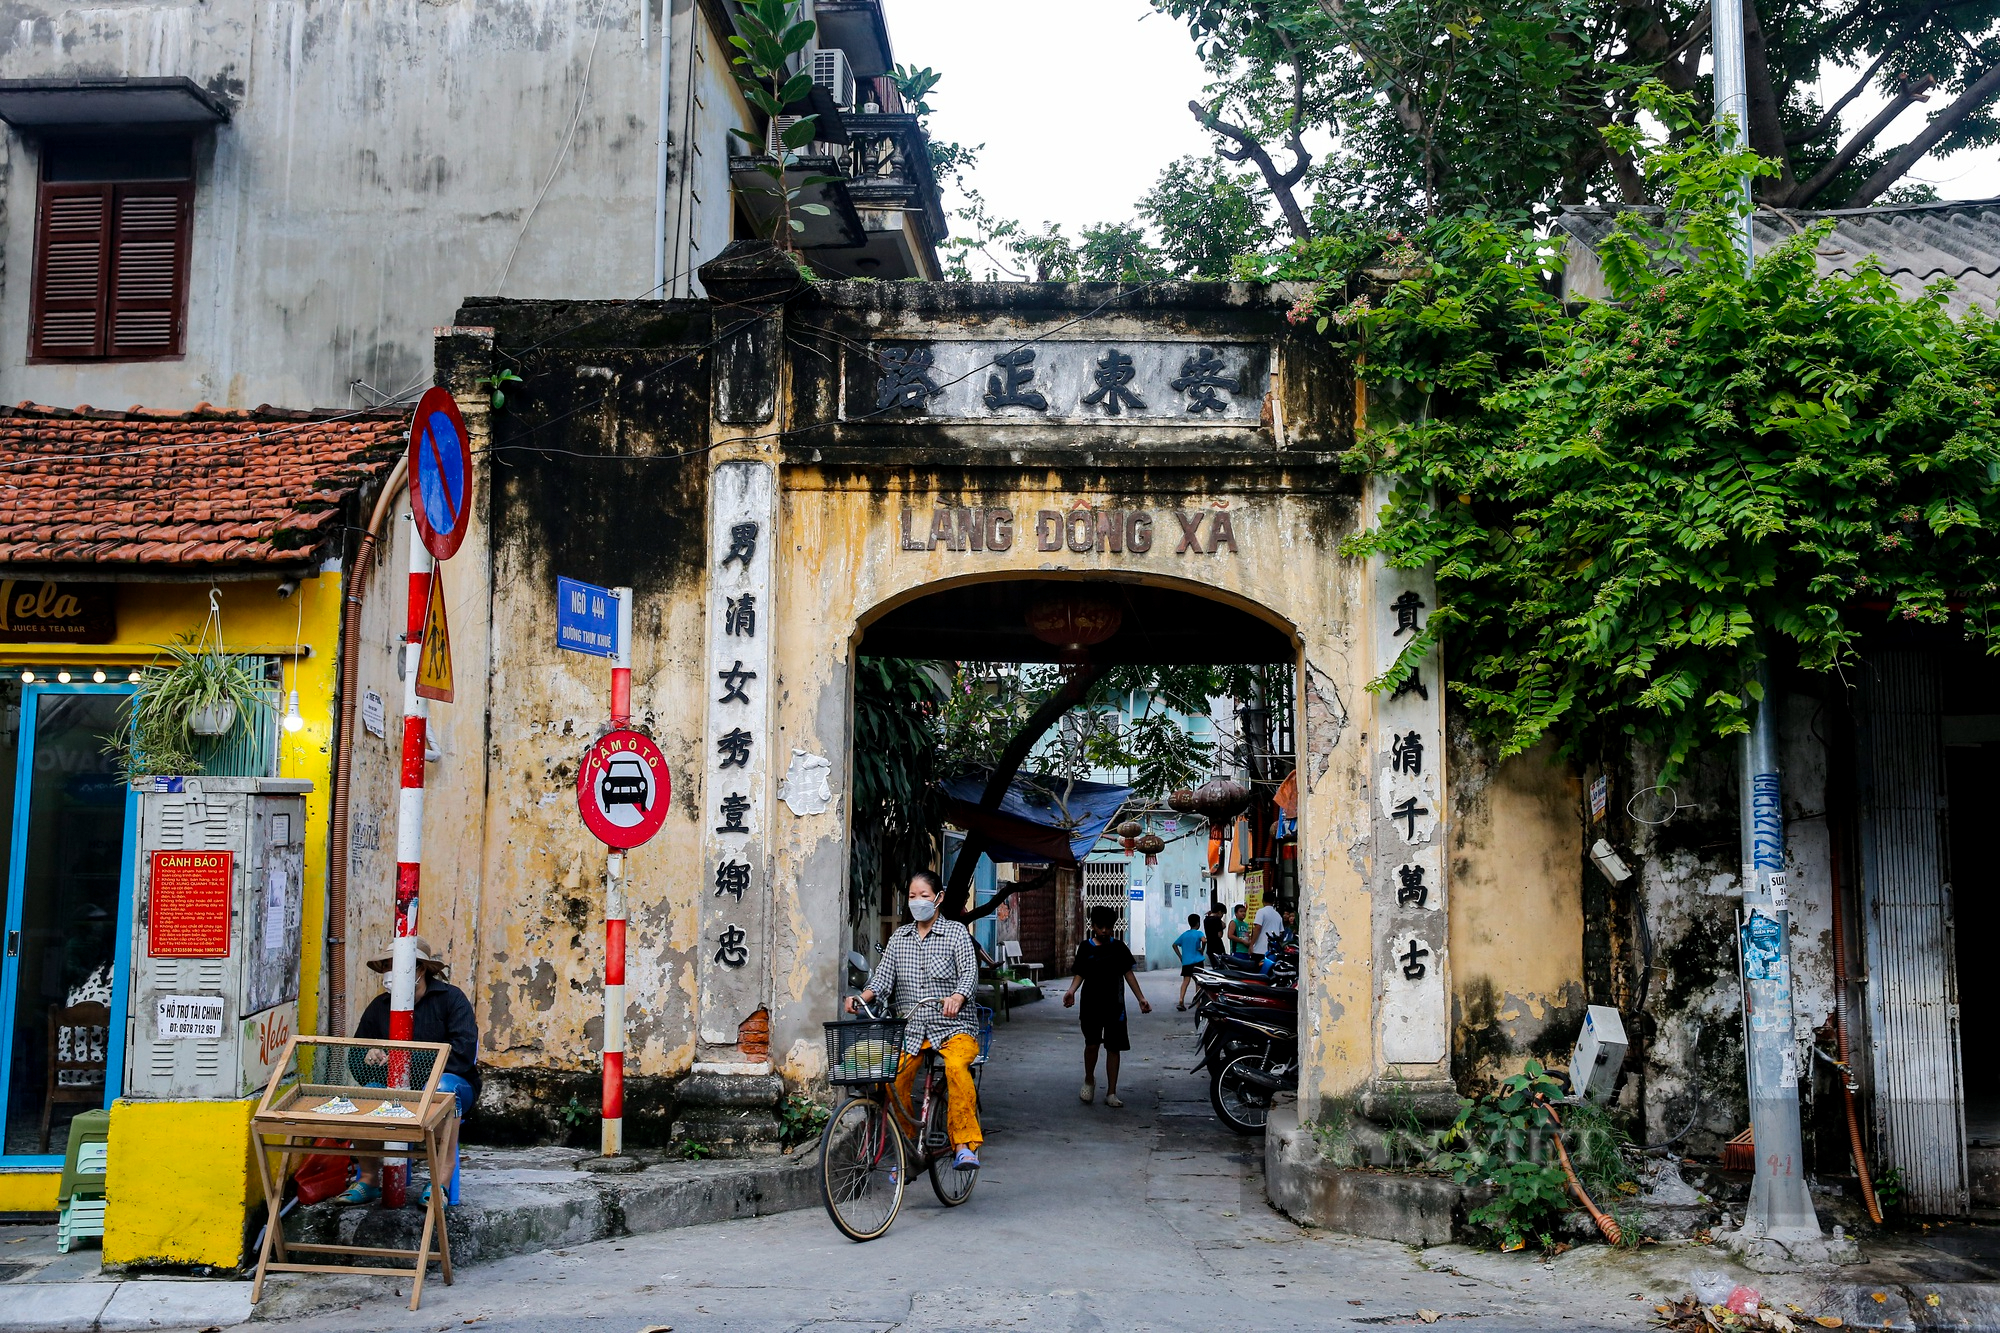 Trầm trồ con phố nhiều cổng, đình làng nhất Hà Nội - Ảnh 10.